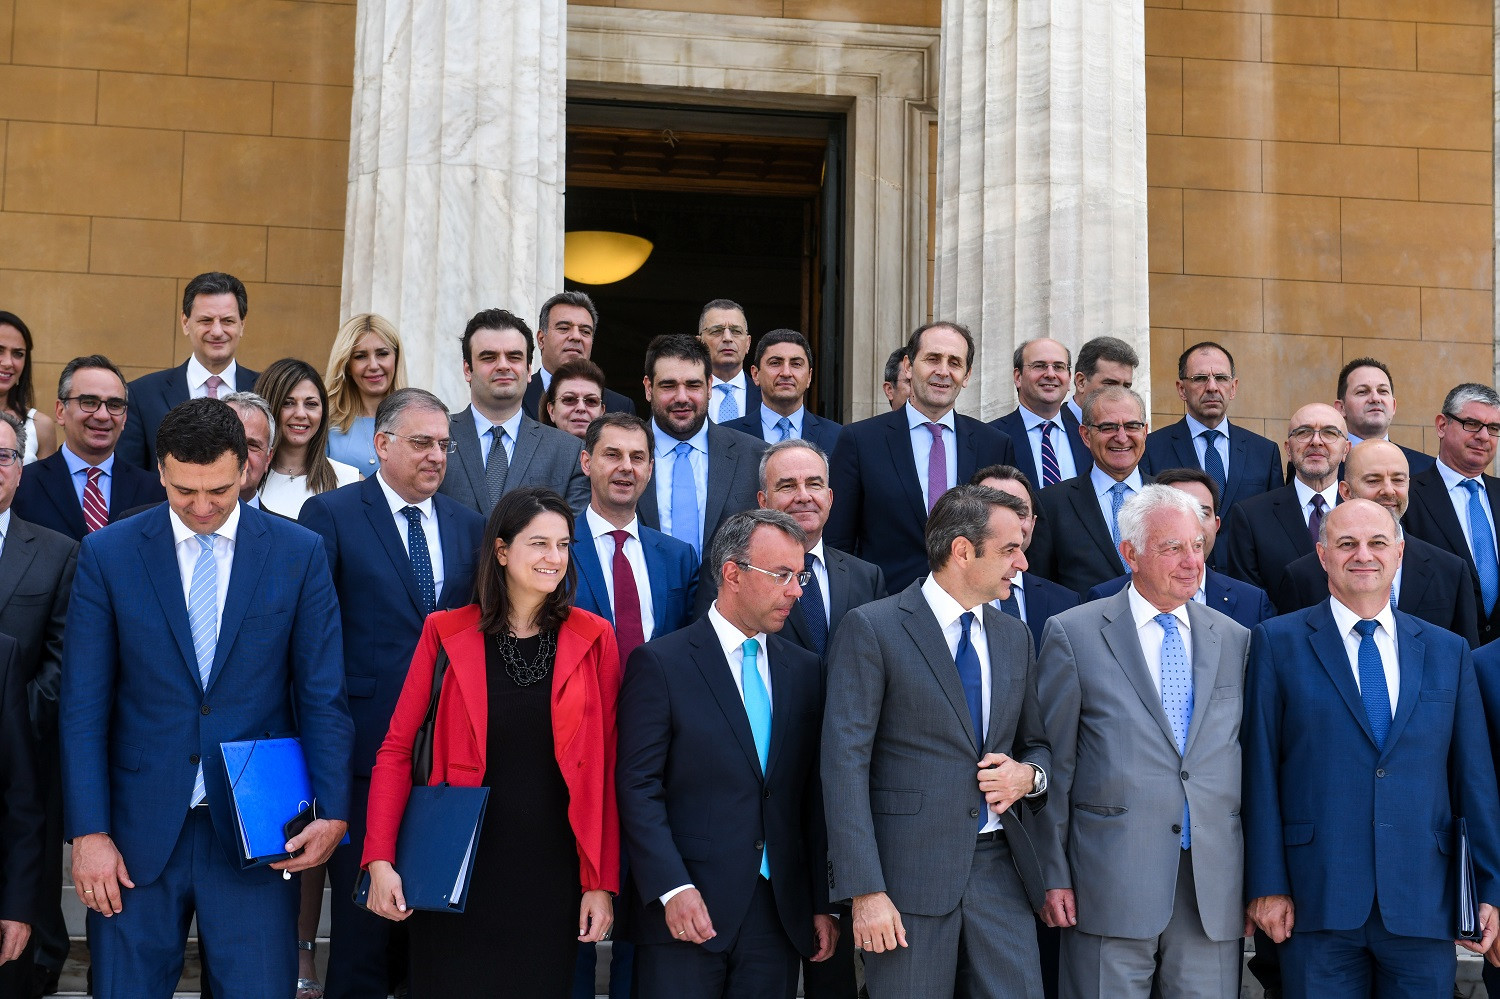 Η πρώτη οικογενειακή φωτογραφία της νέας κυβέρνησης Μητσοτάκη - Δείτε όλα τα καρέ (pics) | Ειδησεις